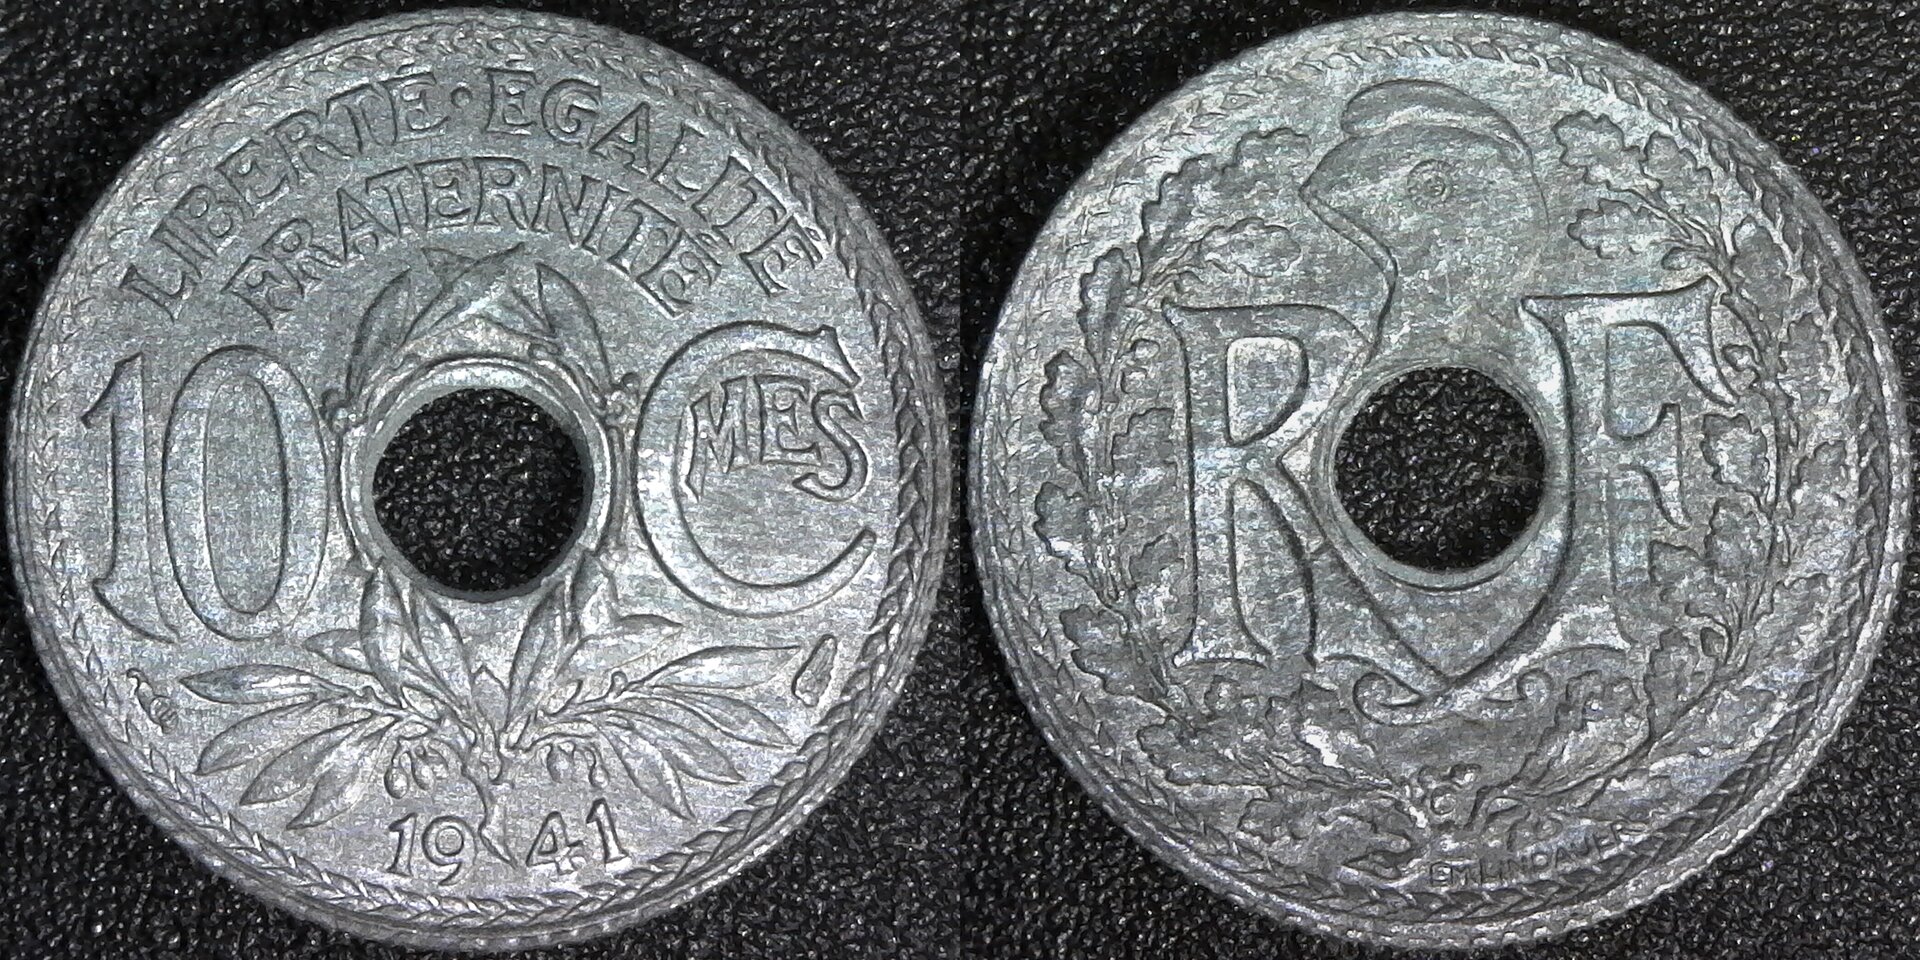 France 10 Centimes 1941 no dash obv-side.jpg